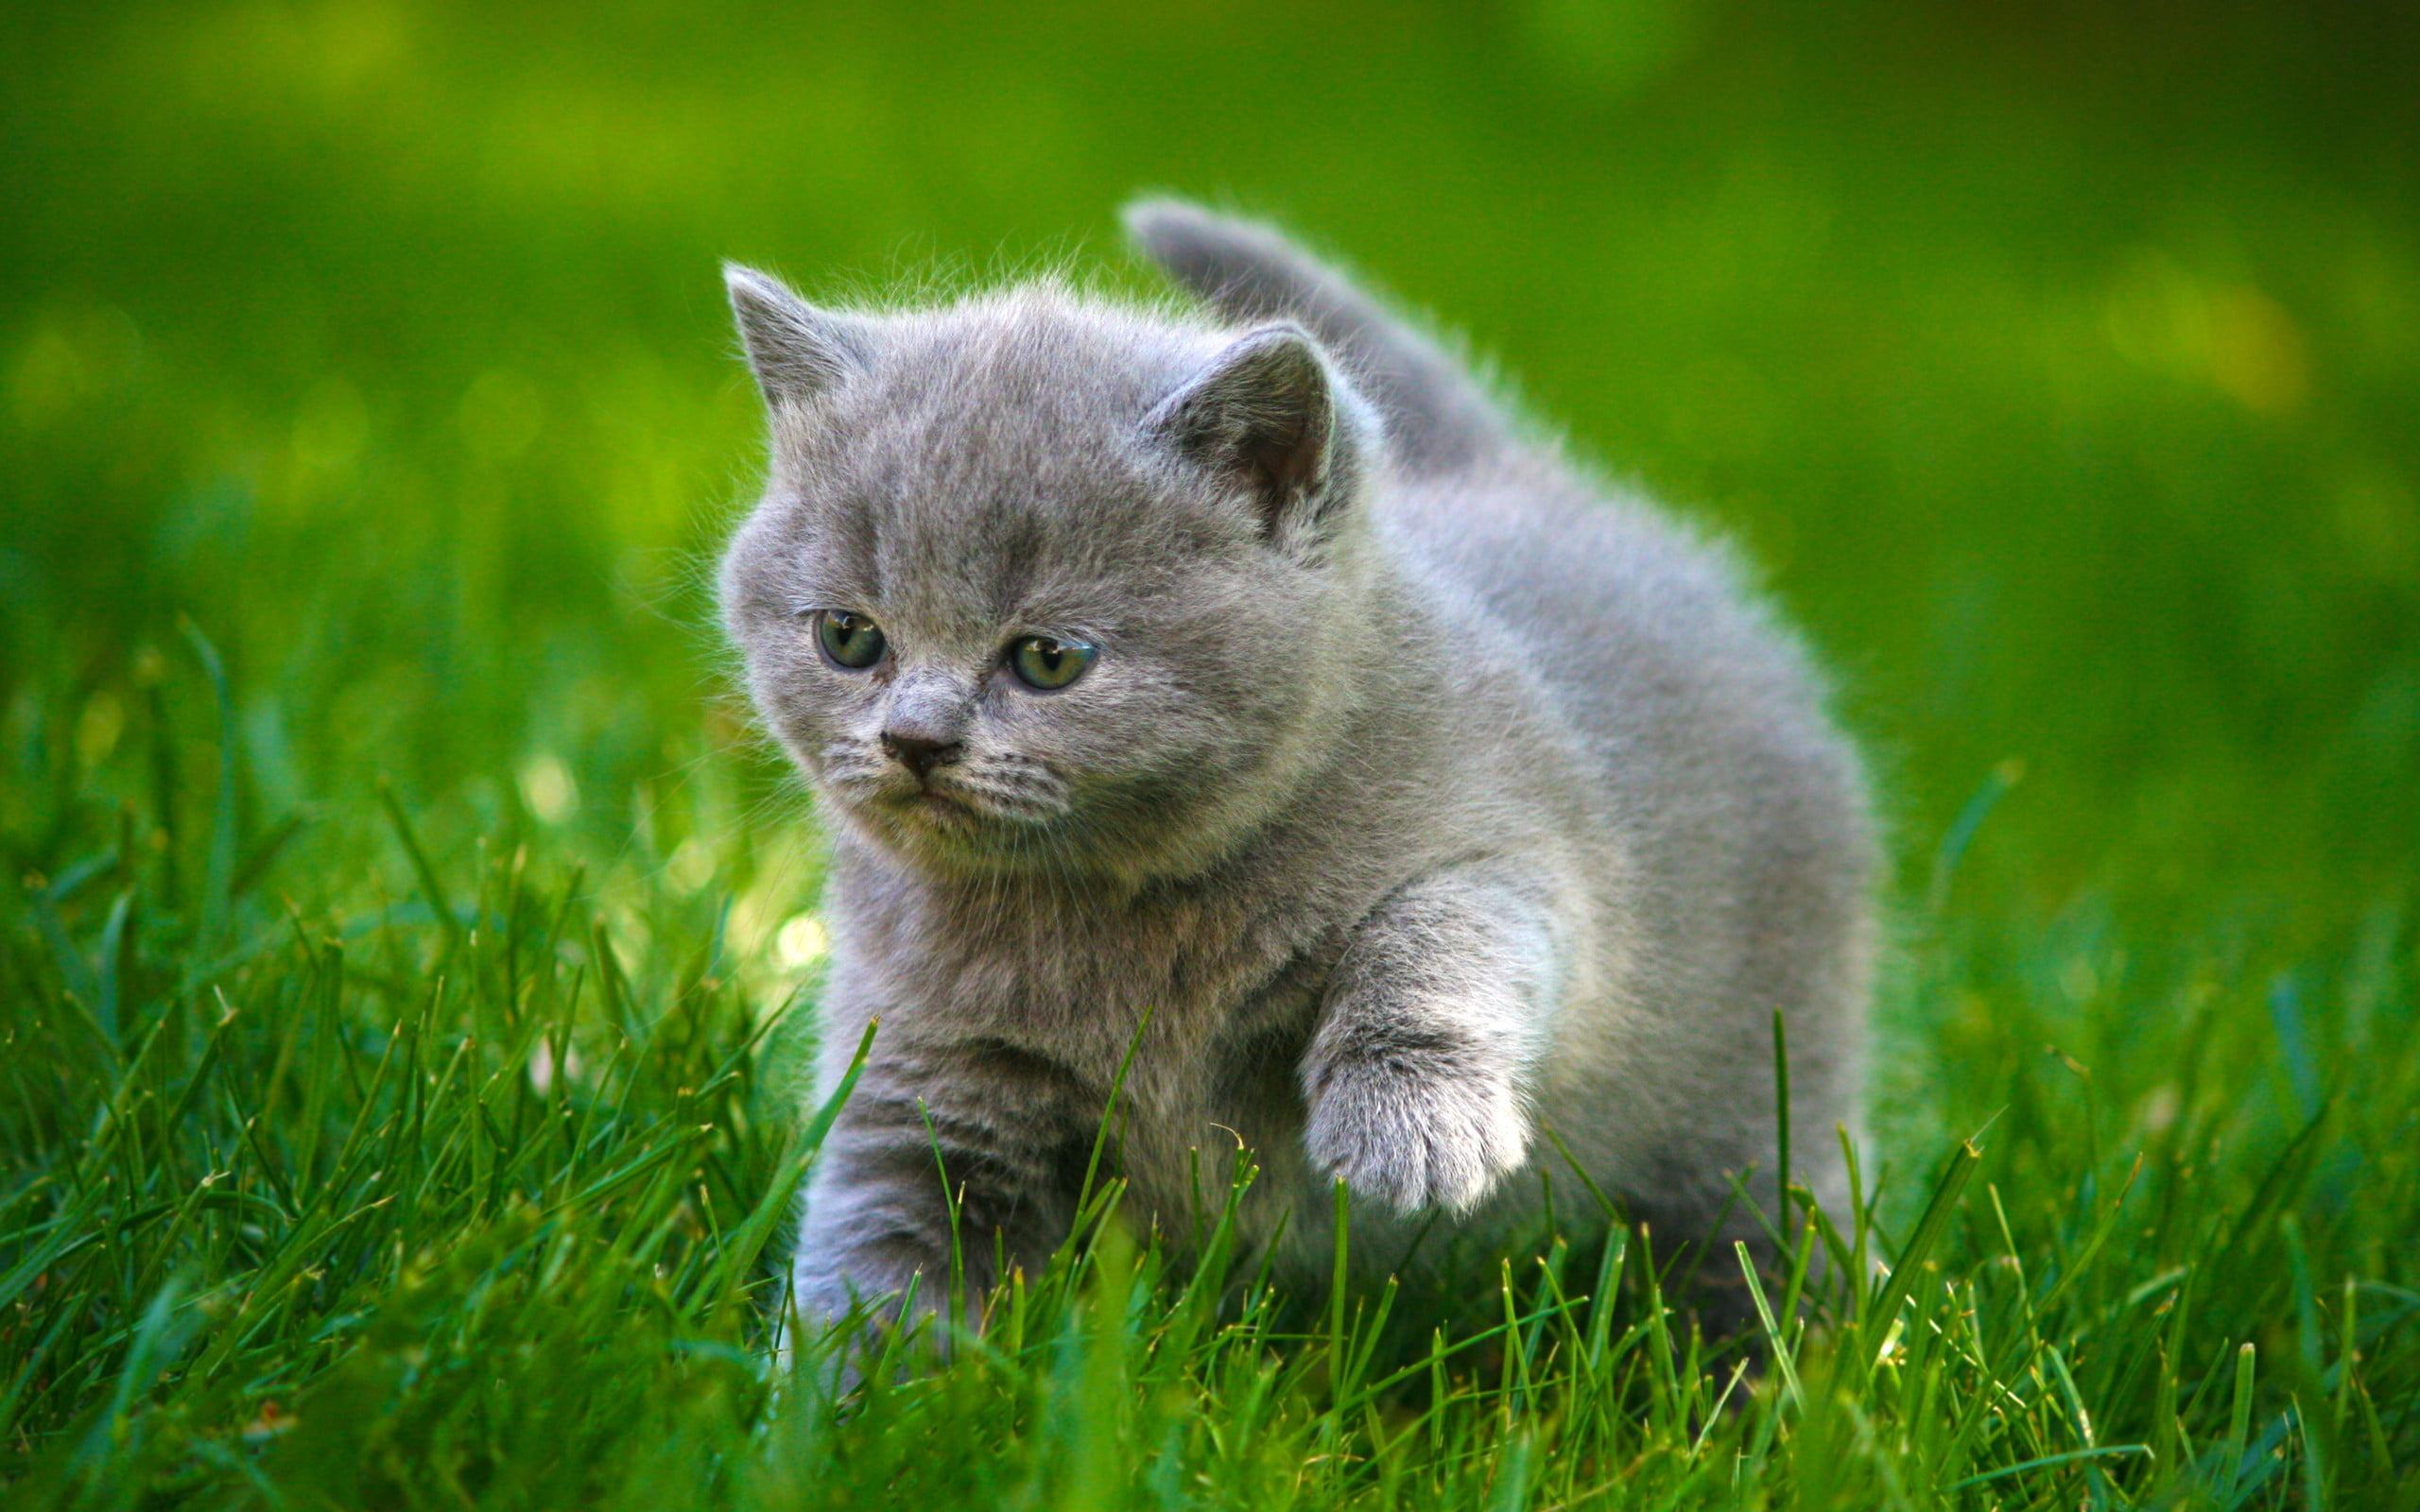 Hình ảnh dễ thương của chú mèo con đang đi trên cỏ